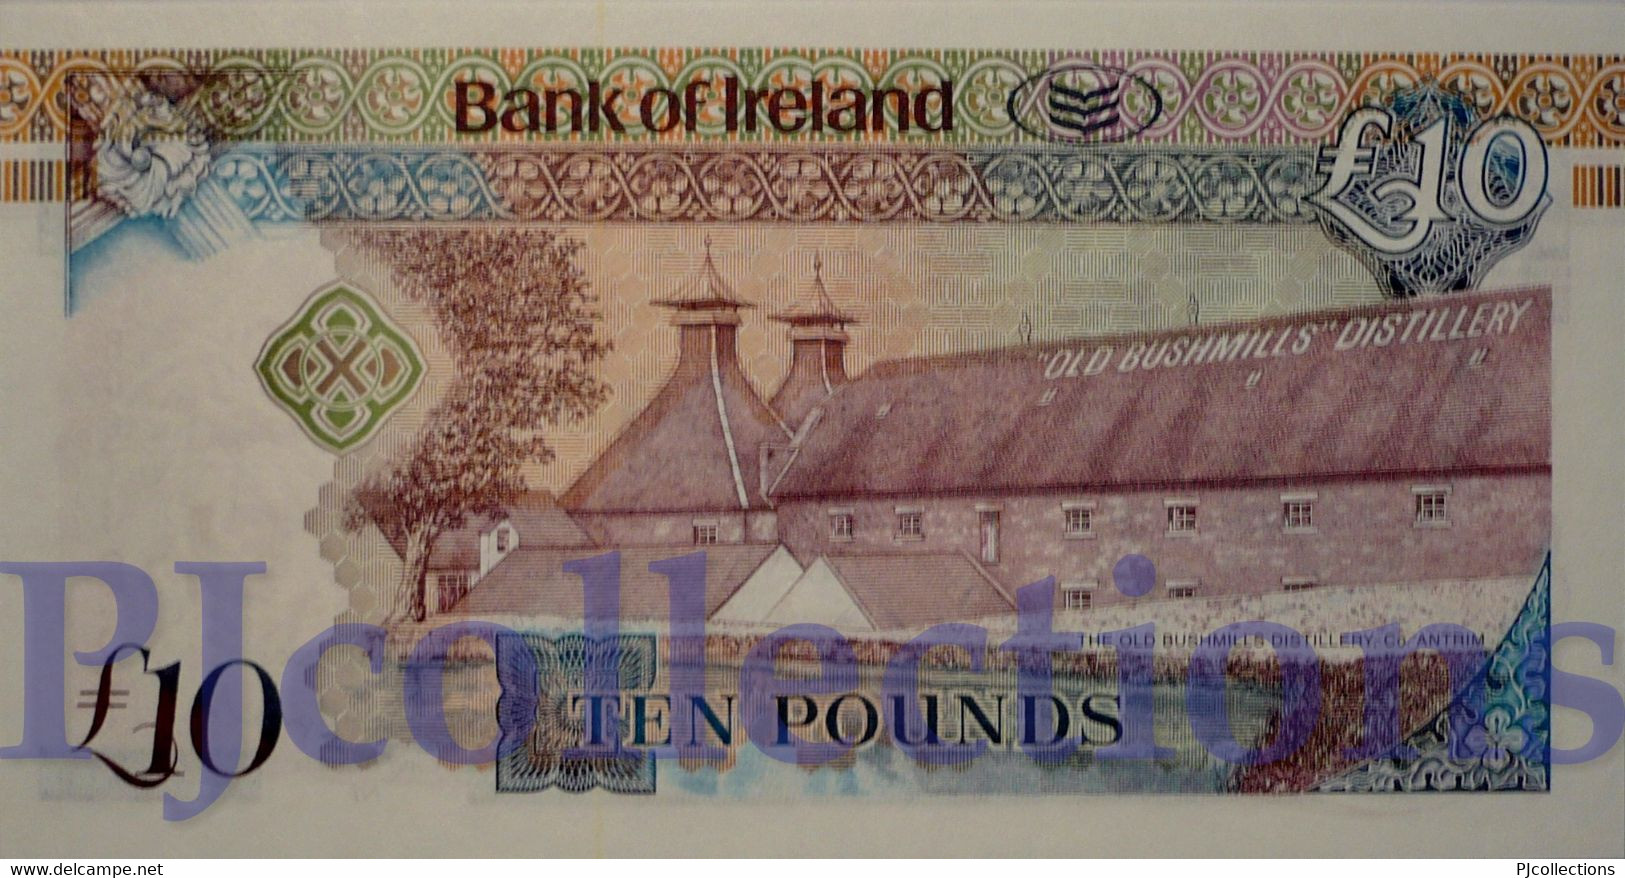 NORTHERN IRELAND 10 POUNDS 2008 PICK 84 UNC - Irlanda